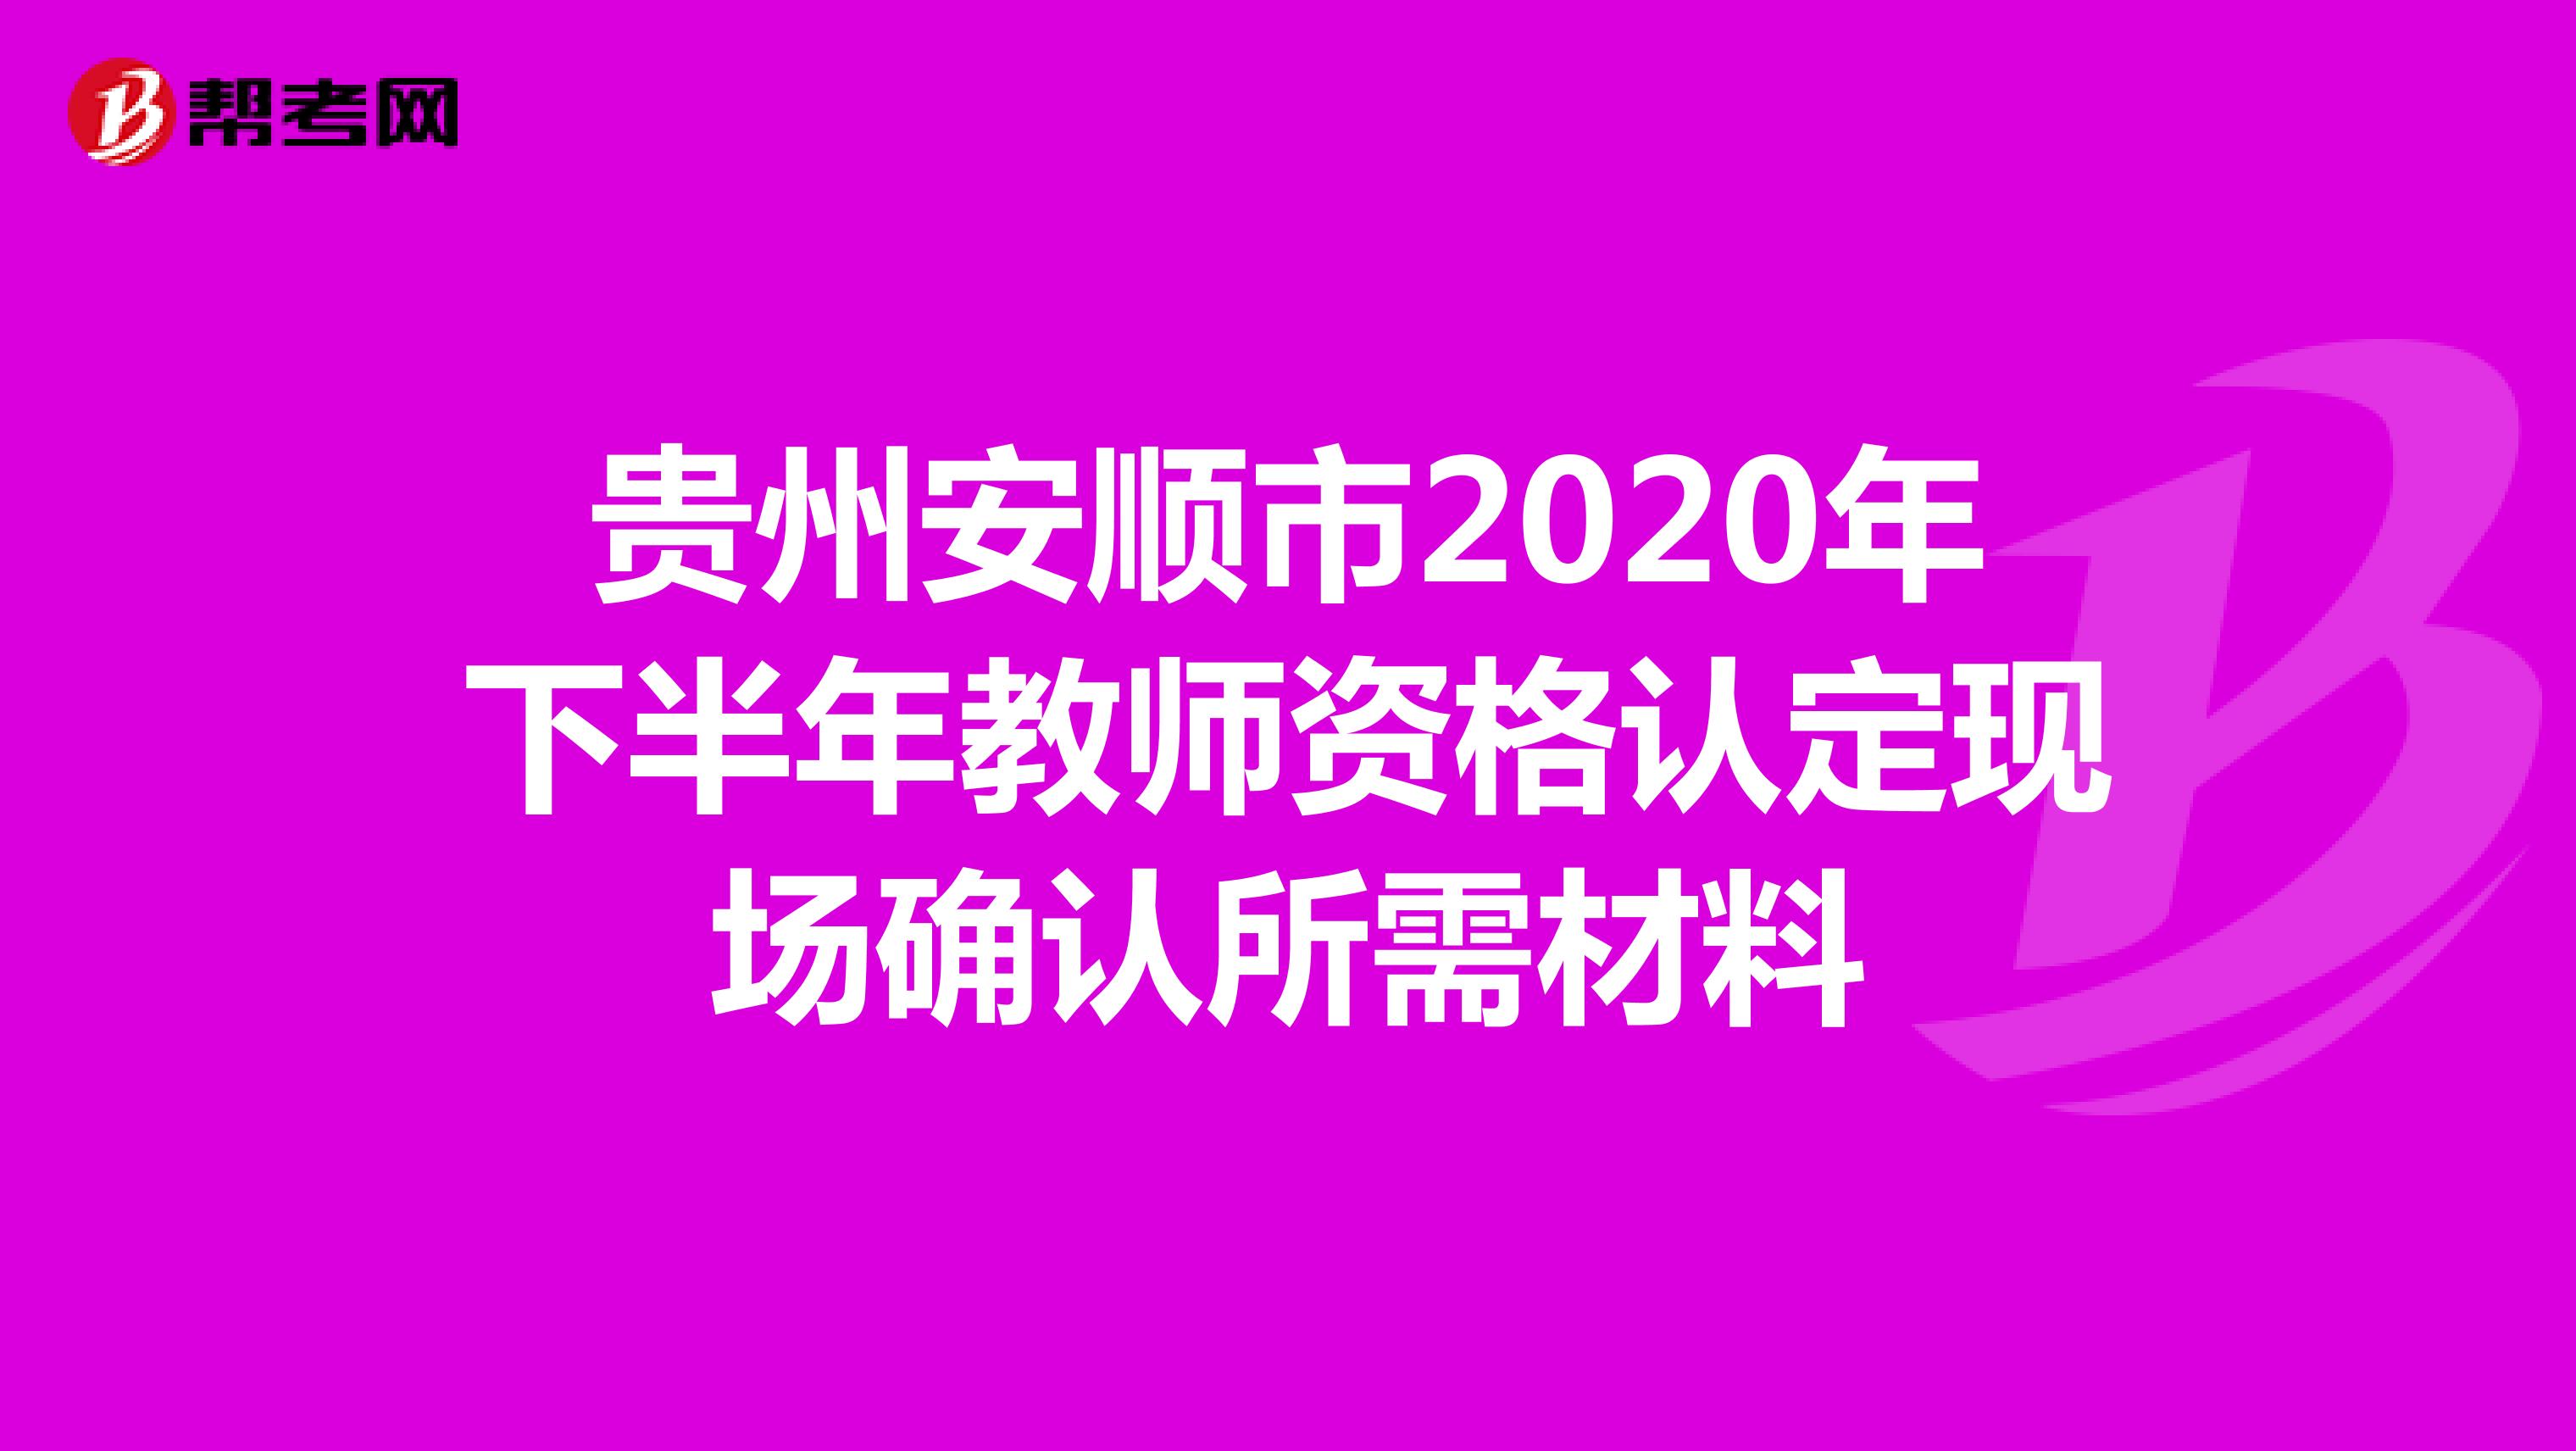 贵州安顺市2020年下半年教师资格认定现场确认所需材料